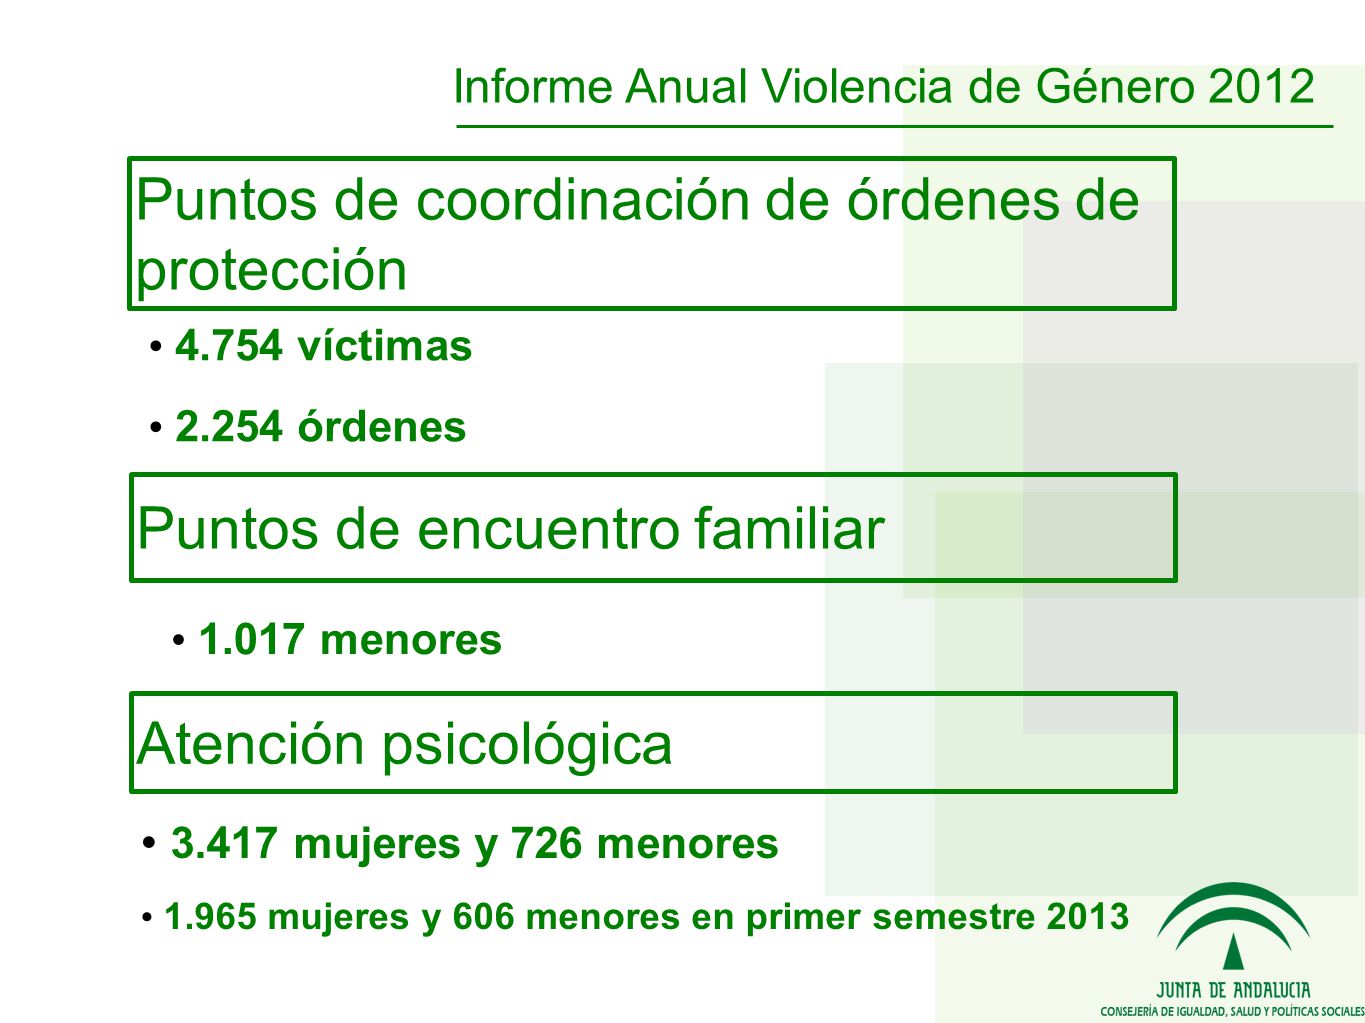 Puntos de coordinación de órdenes de protección víctimas órdenes Puntos de encuentro familiar menores Atención psicológica mujeres y 726 menores mujeres y 606 menores en primer semestre 2013 Informe Anual Violencia de Género 2012